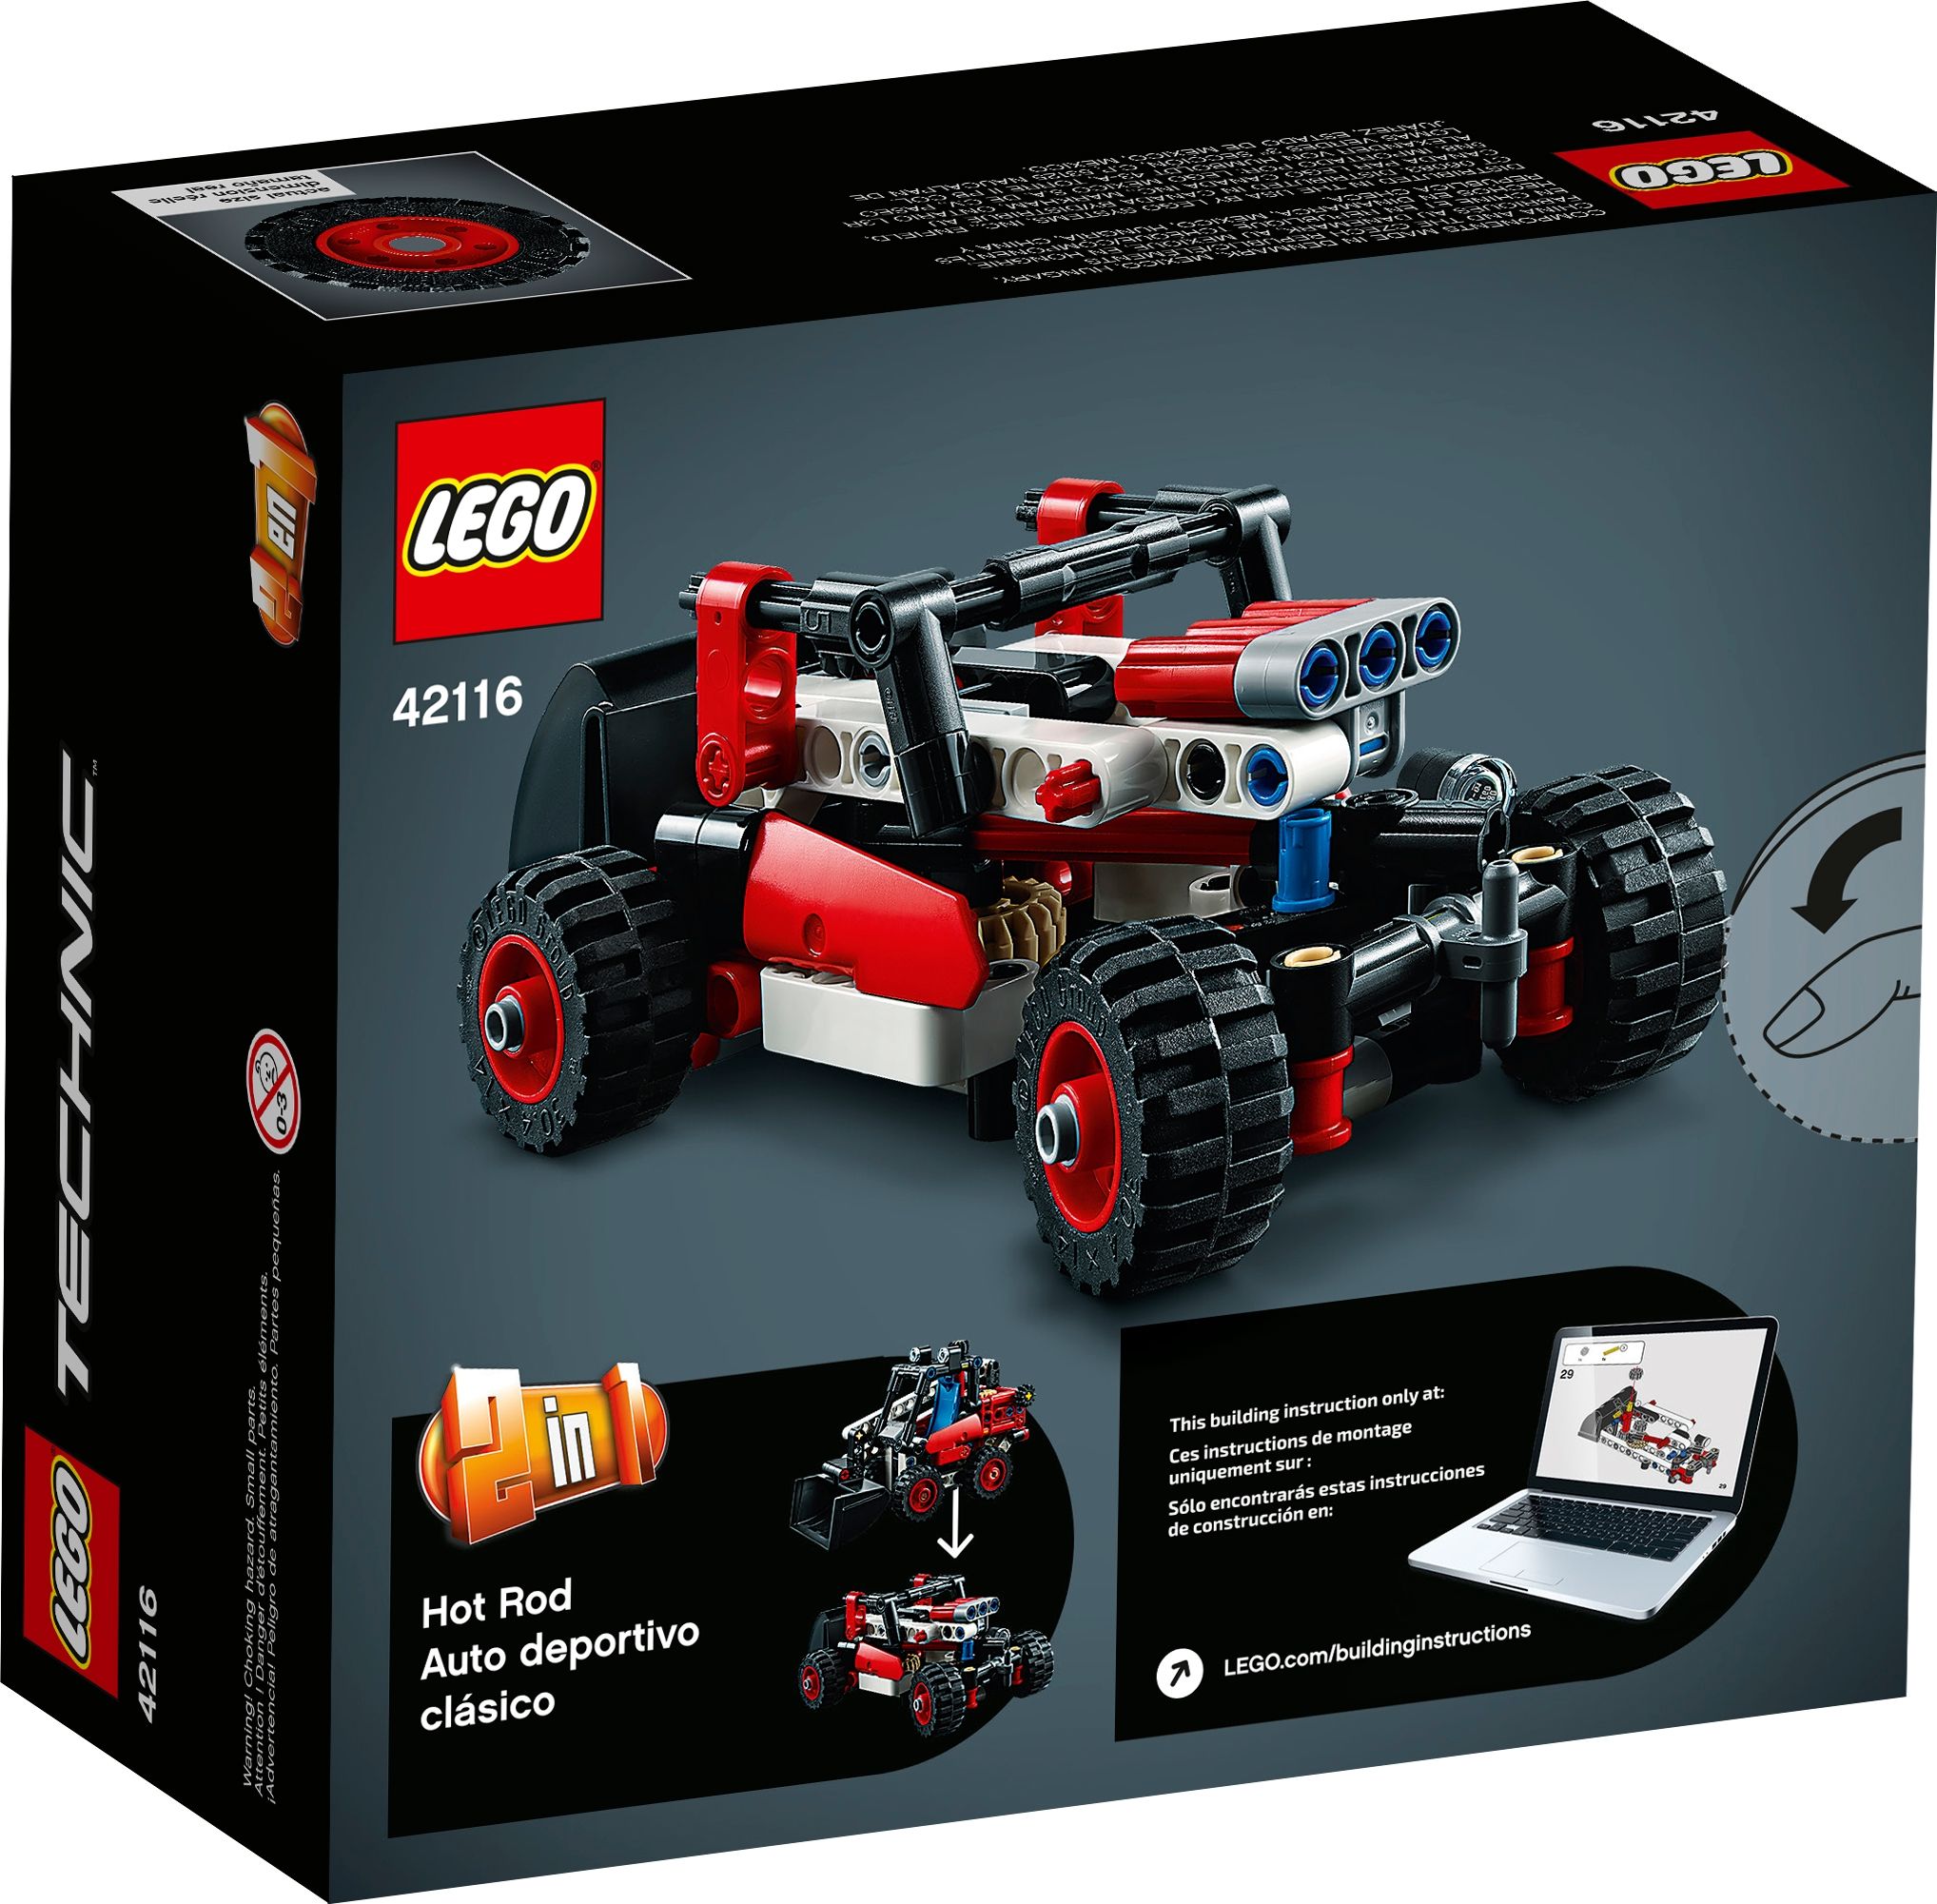 LEGO Technic 42116 Kompaktlader LEGO_42116_box5_v39.jpg